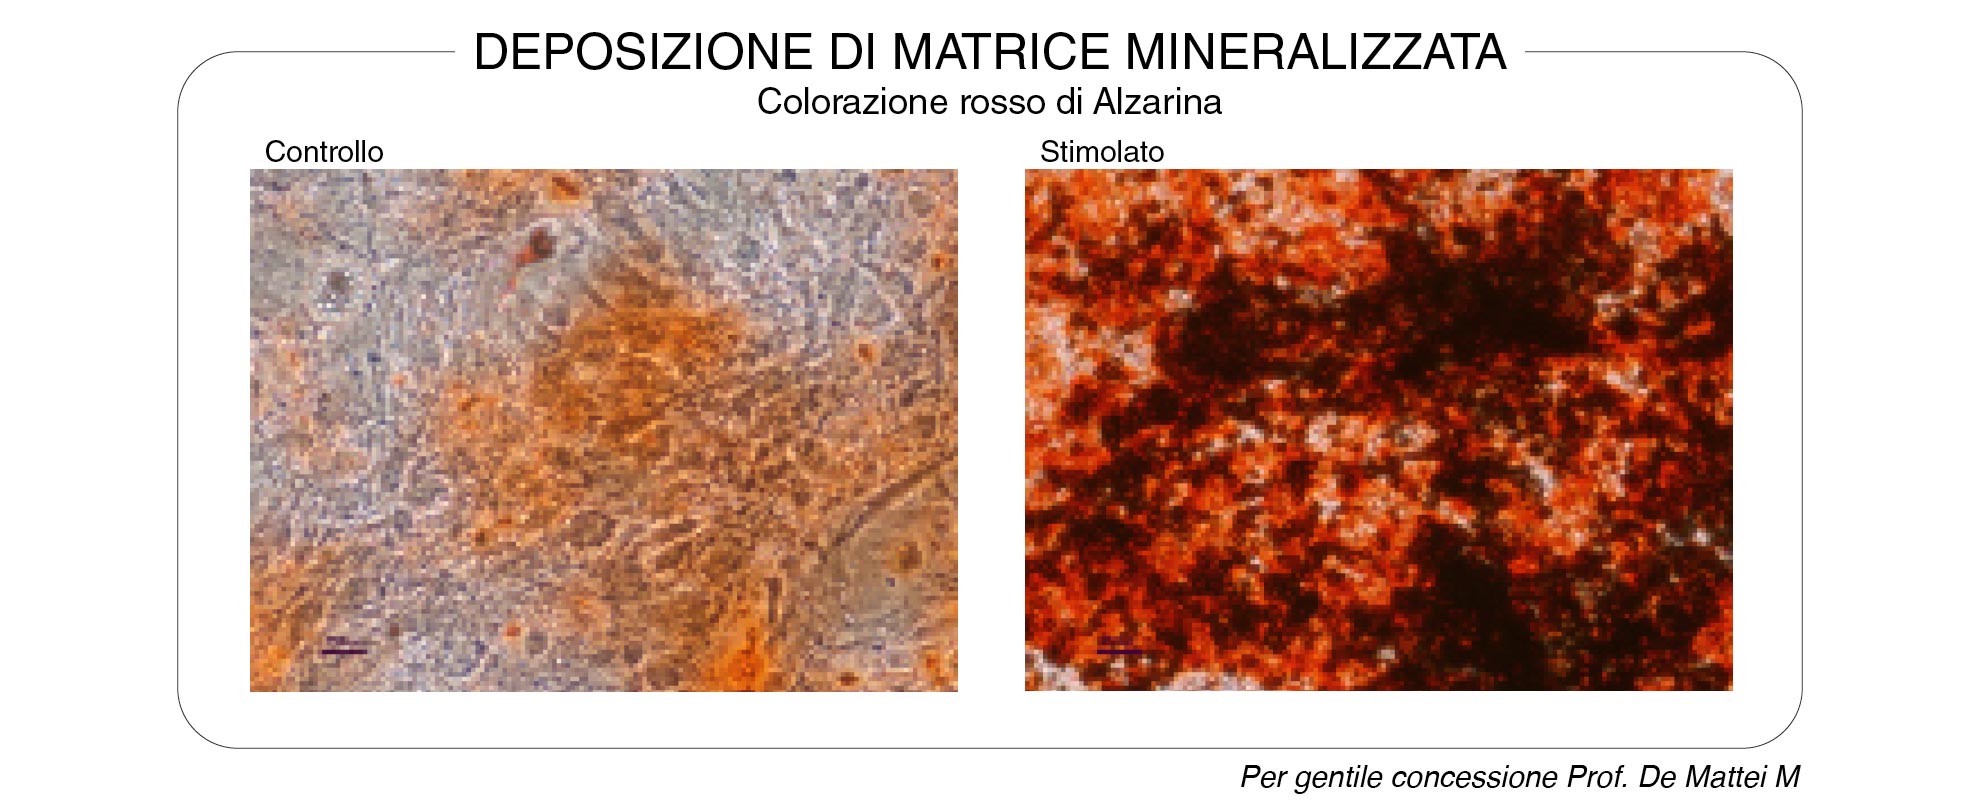 Deposizione-di-matrice-mineralizzata